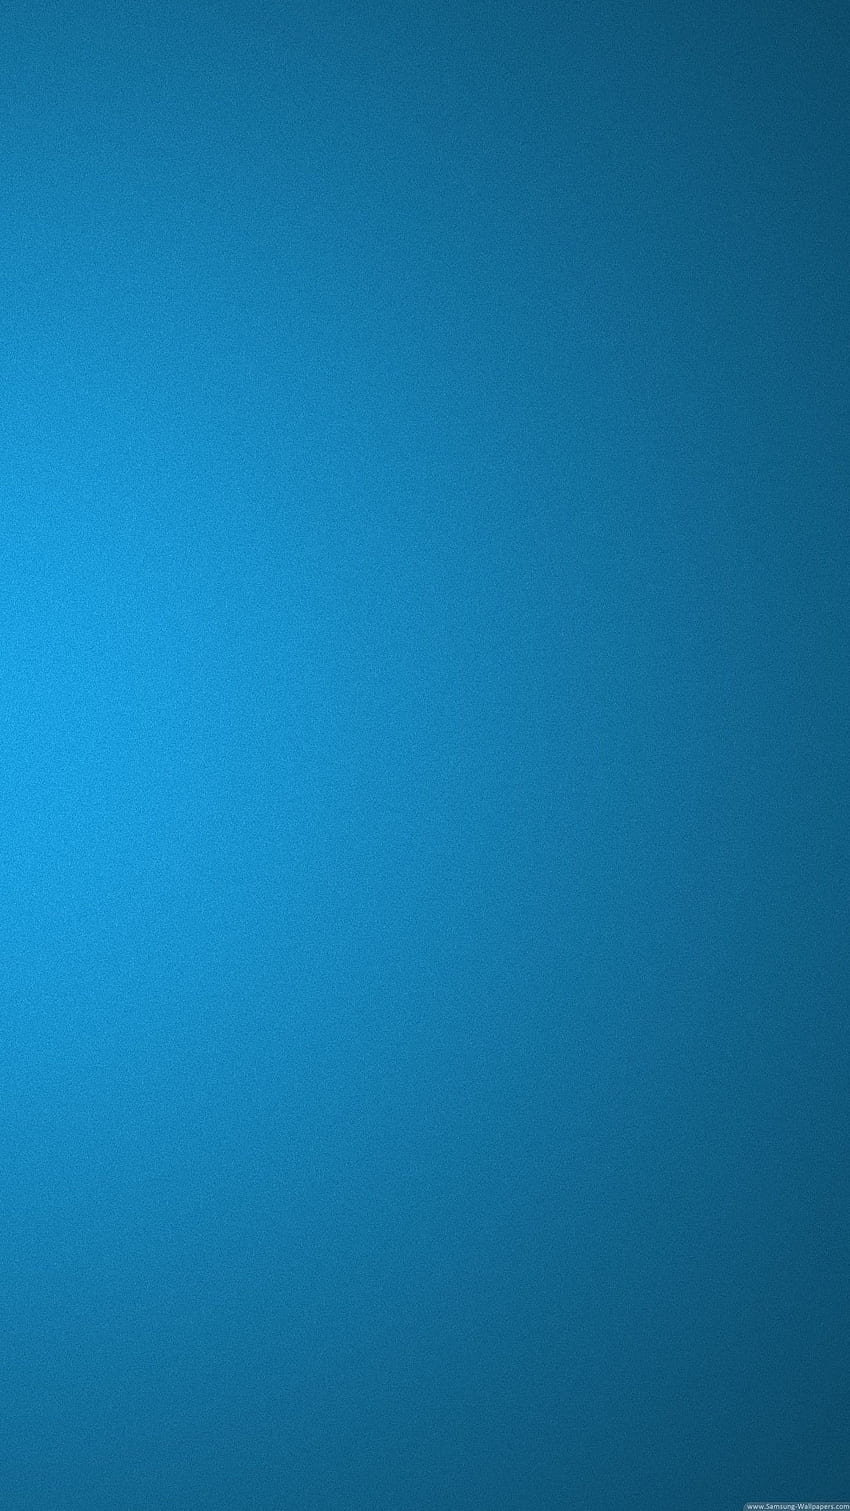 青い背景のロック画面 Samsung Galaxy S5 - 服。 カラーiphone、S5、青背景、水色無地 HD電話の壁紙